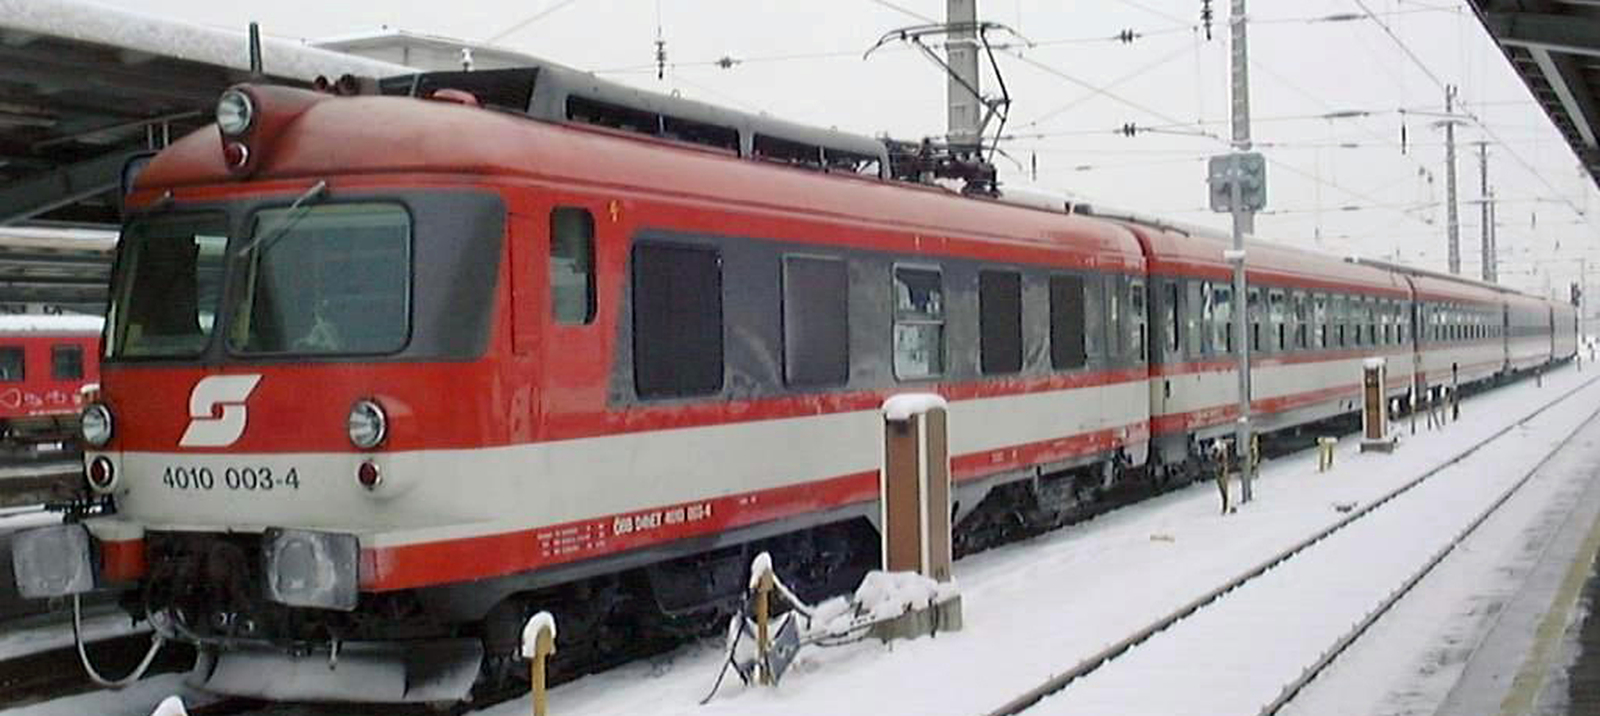 4010 003 in January 2002 in Graz